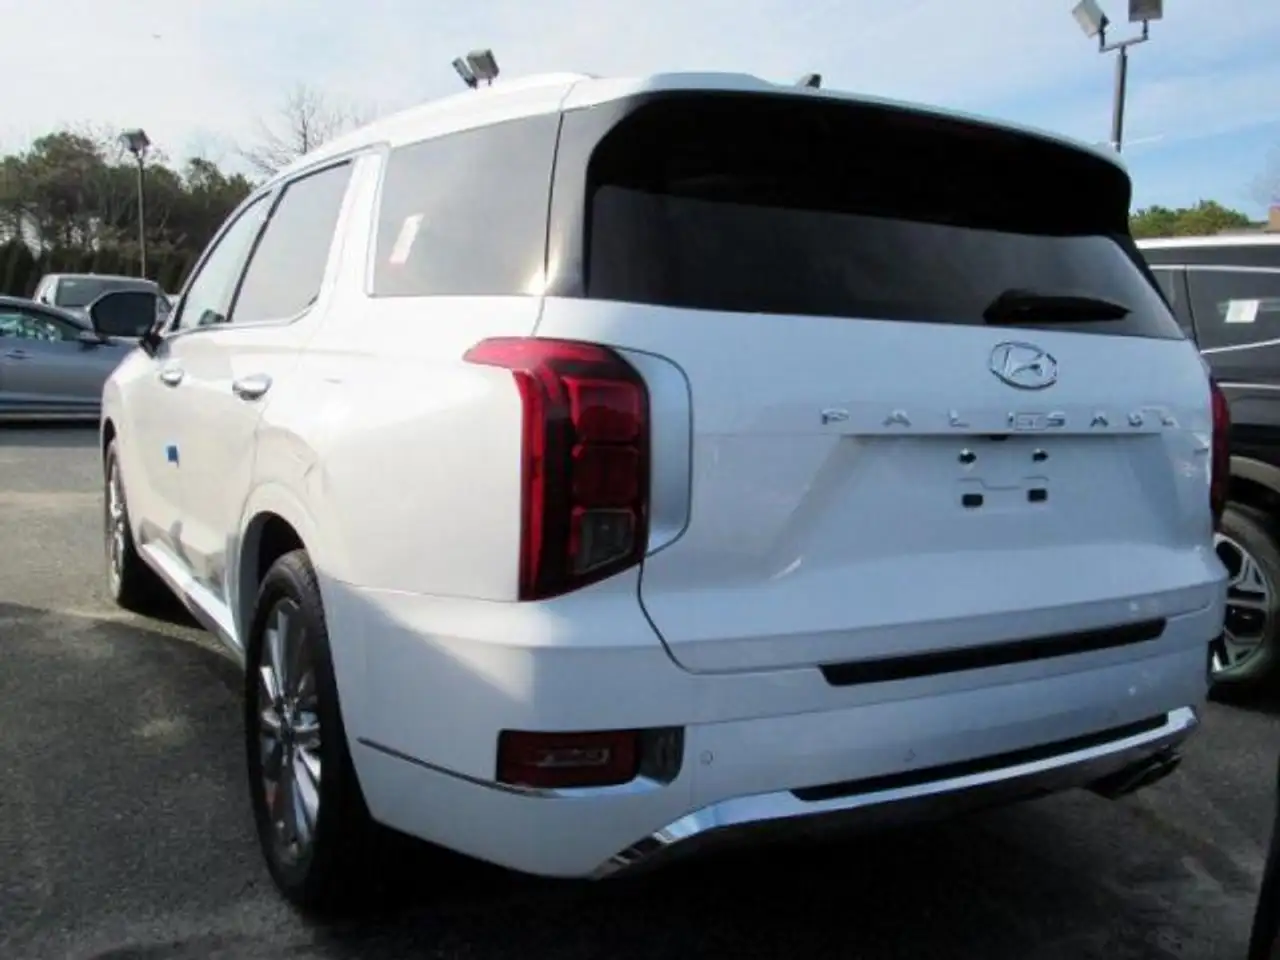 Hyundai PALISADE SUV/4x4/Pickup en Blanco ocasión en BANASTAS por € 79.100,-